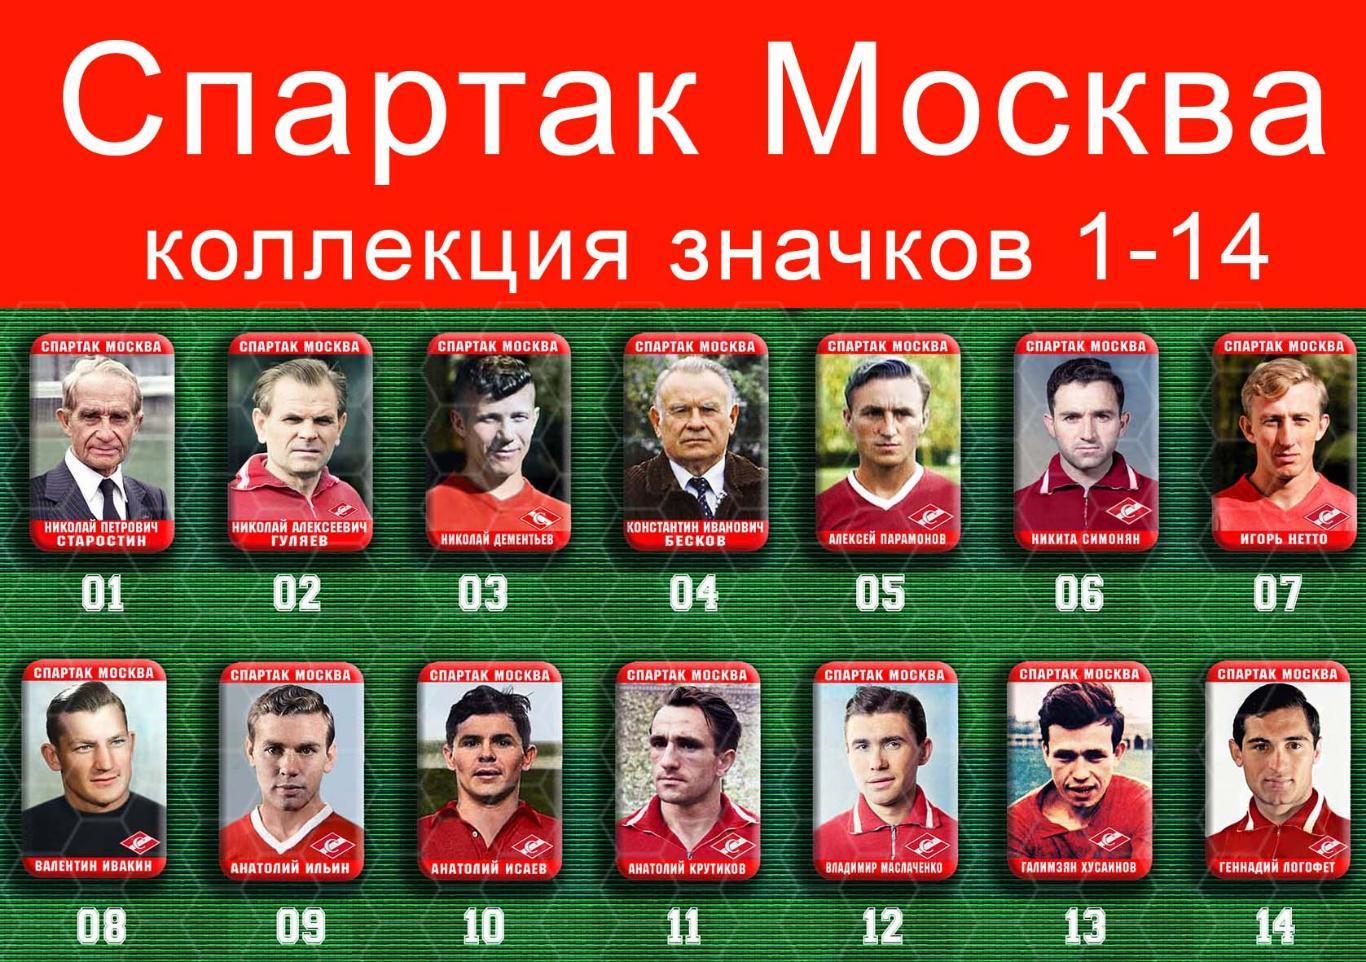 Спартак Москва 159 значков - 1-14